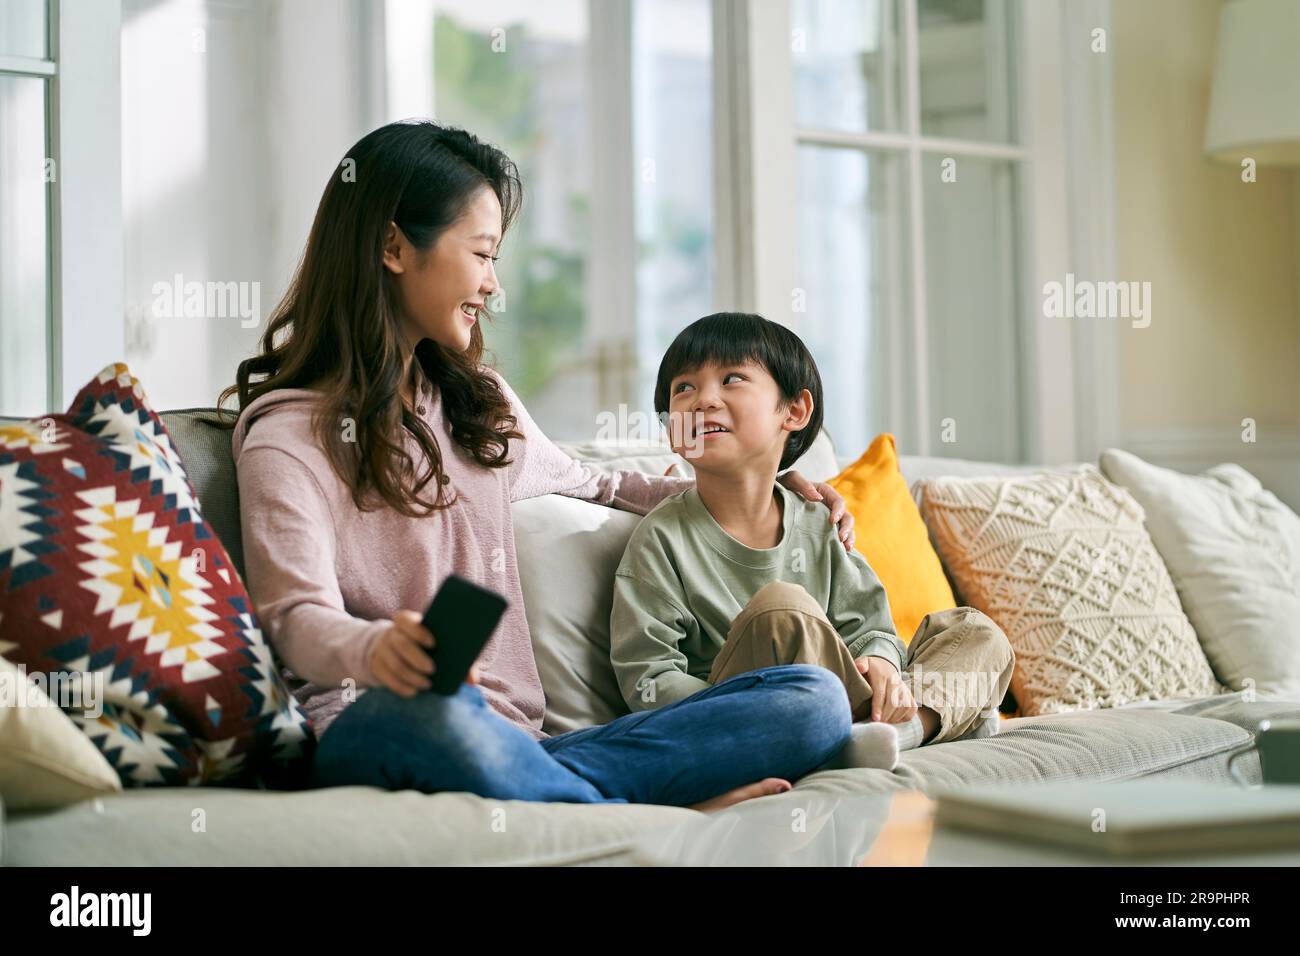 Junge asiatische Mutter, die zu Hause auf dem Familientisch sitzt und ein angenehmes Gespräch mit dem fünfjährigen Sohn führt Stockfoto